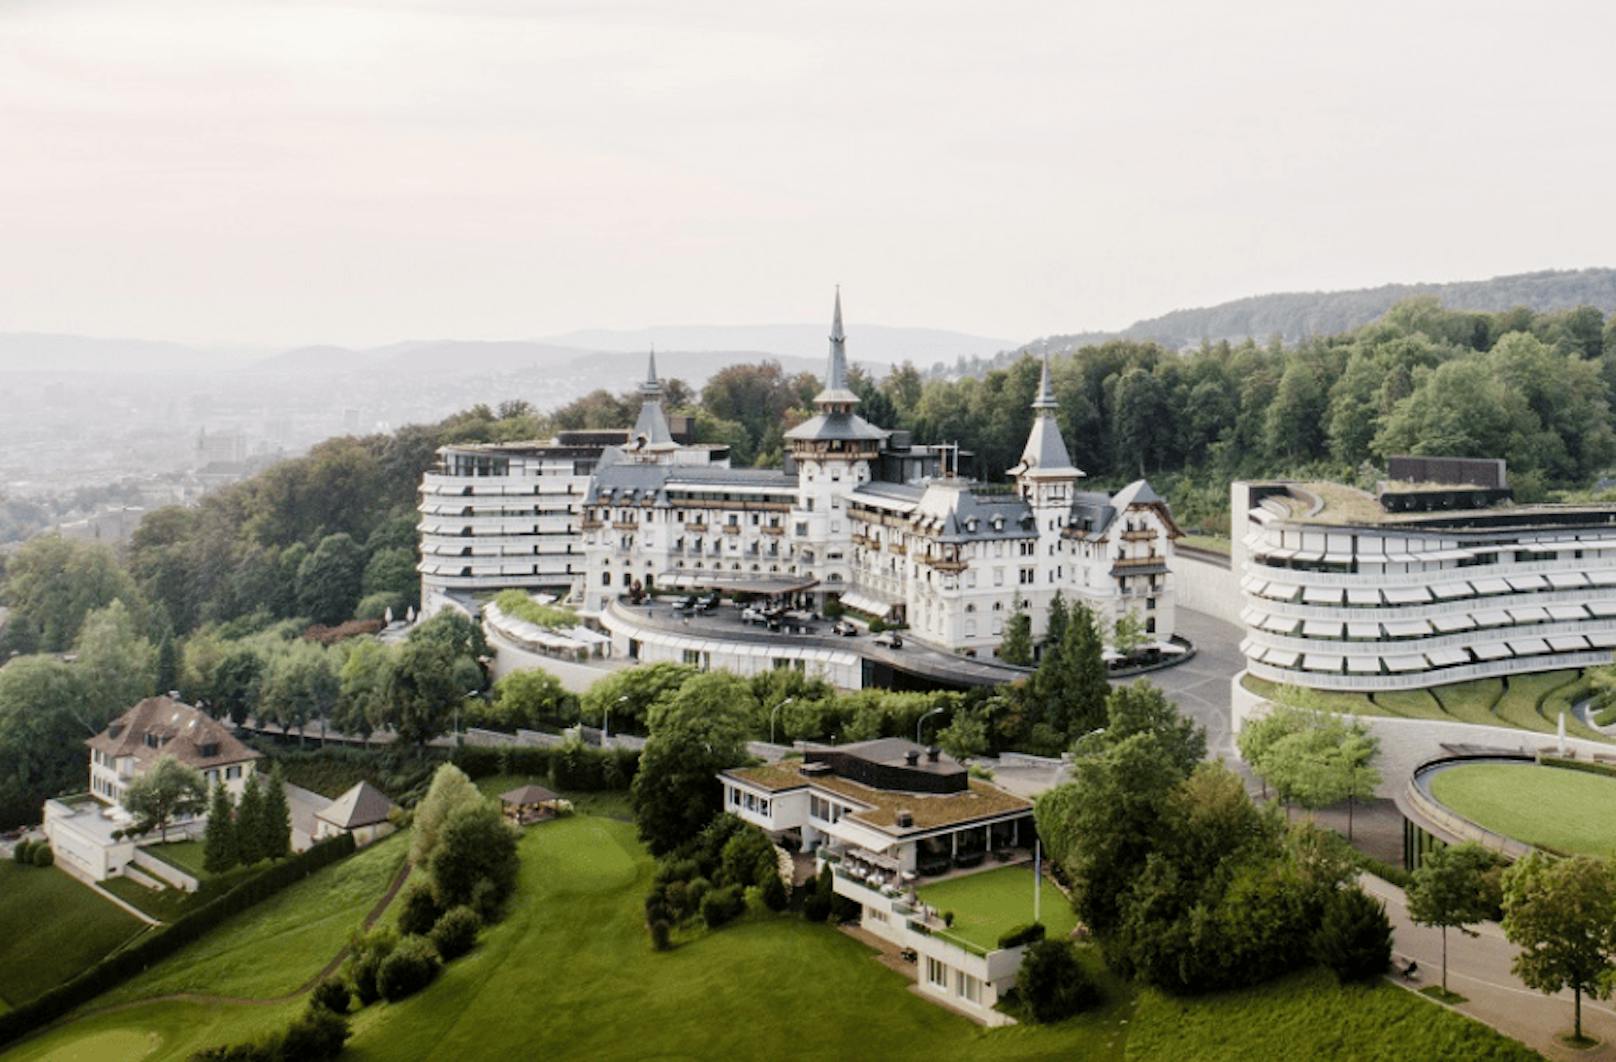 Besitzer Schwarzenbach ließ das Hotel vor einigen Jahren für 440 Millionen Euro renovieren.